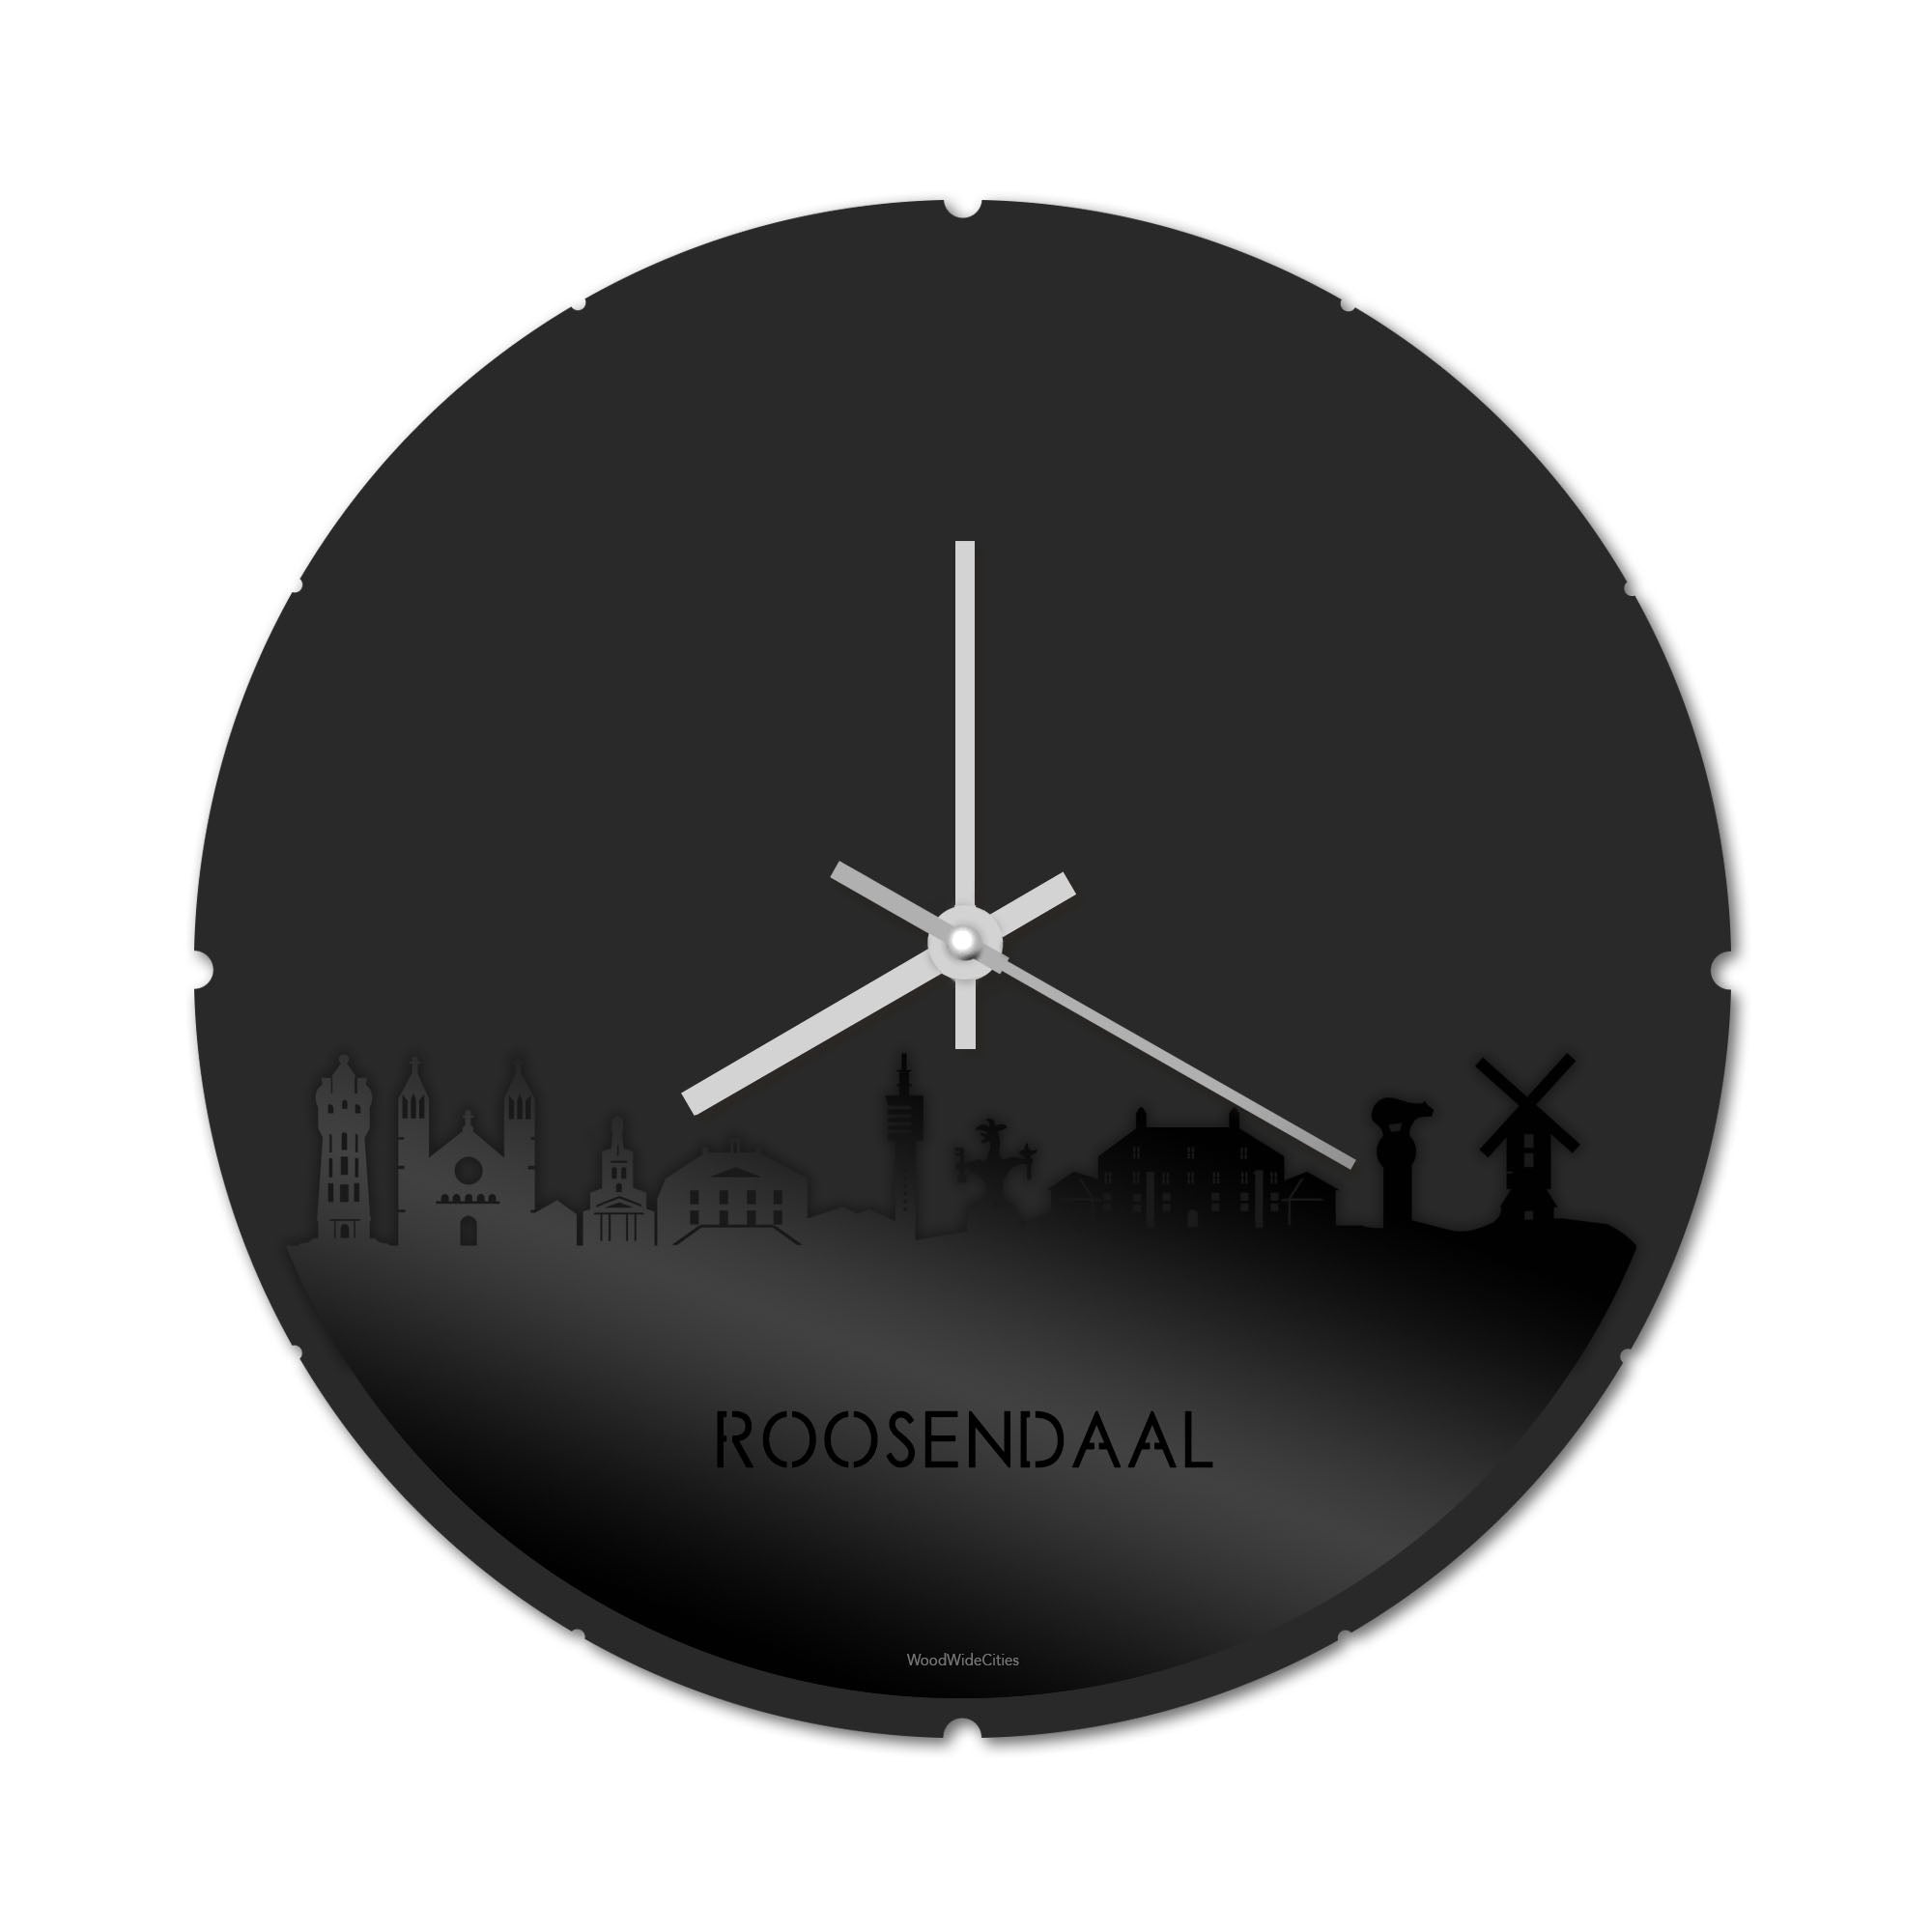 Skyline Klok Rond Roosendaal Zwart glanzend gerecycled kunststof cadeau decoratie relatiegeschenk van WoodWideCities